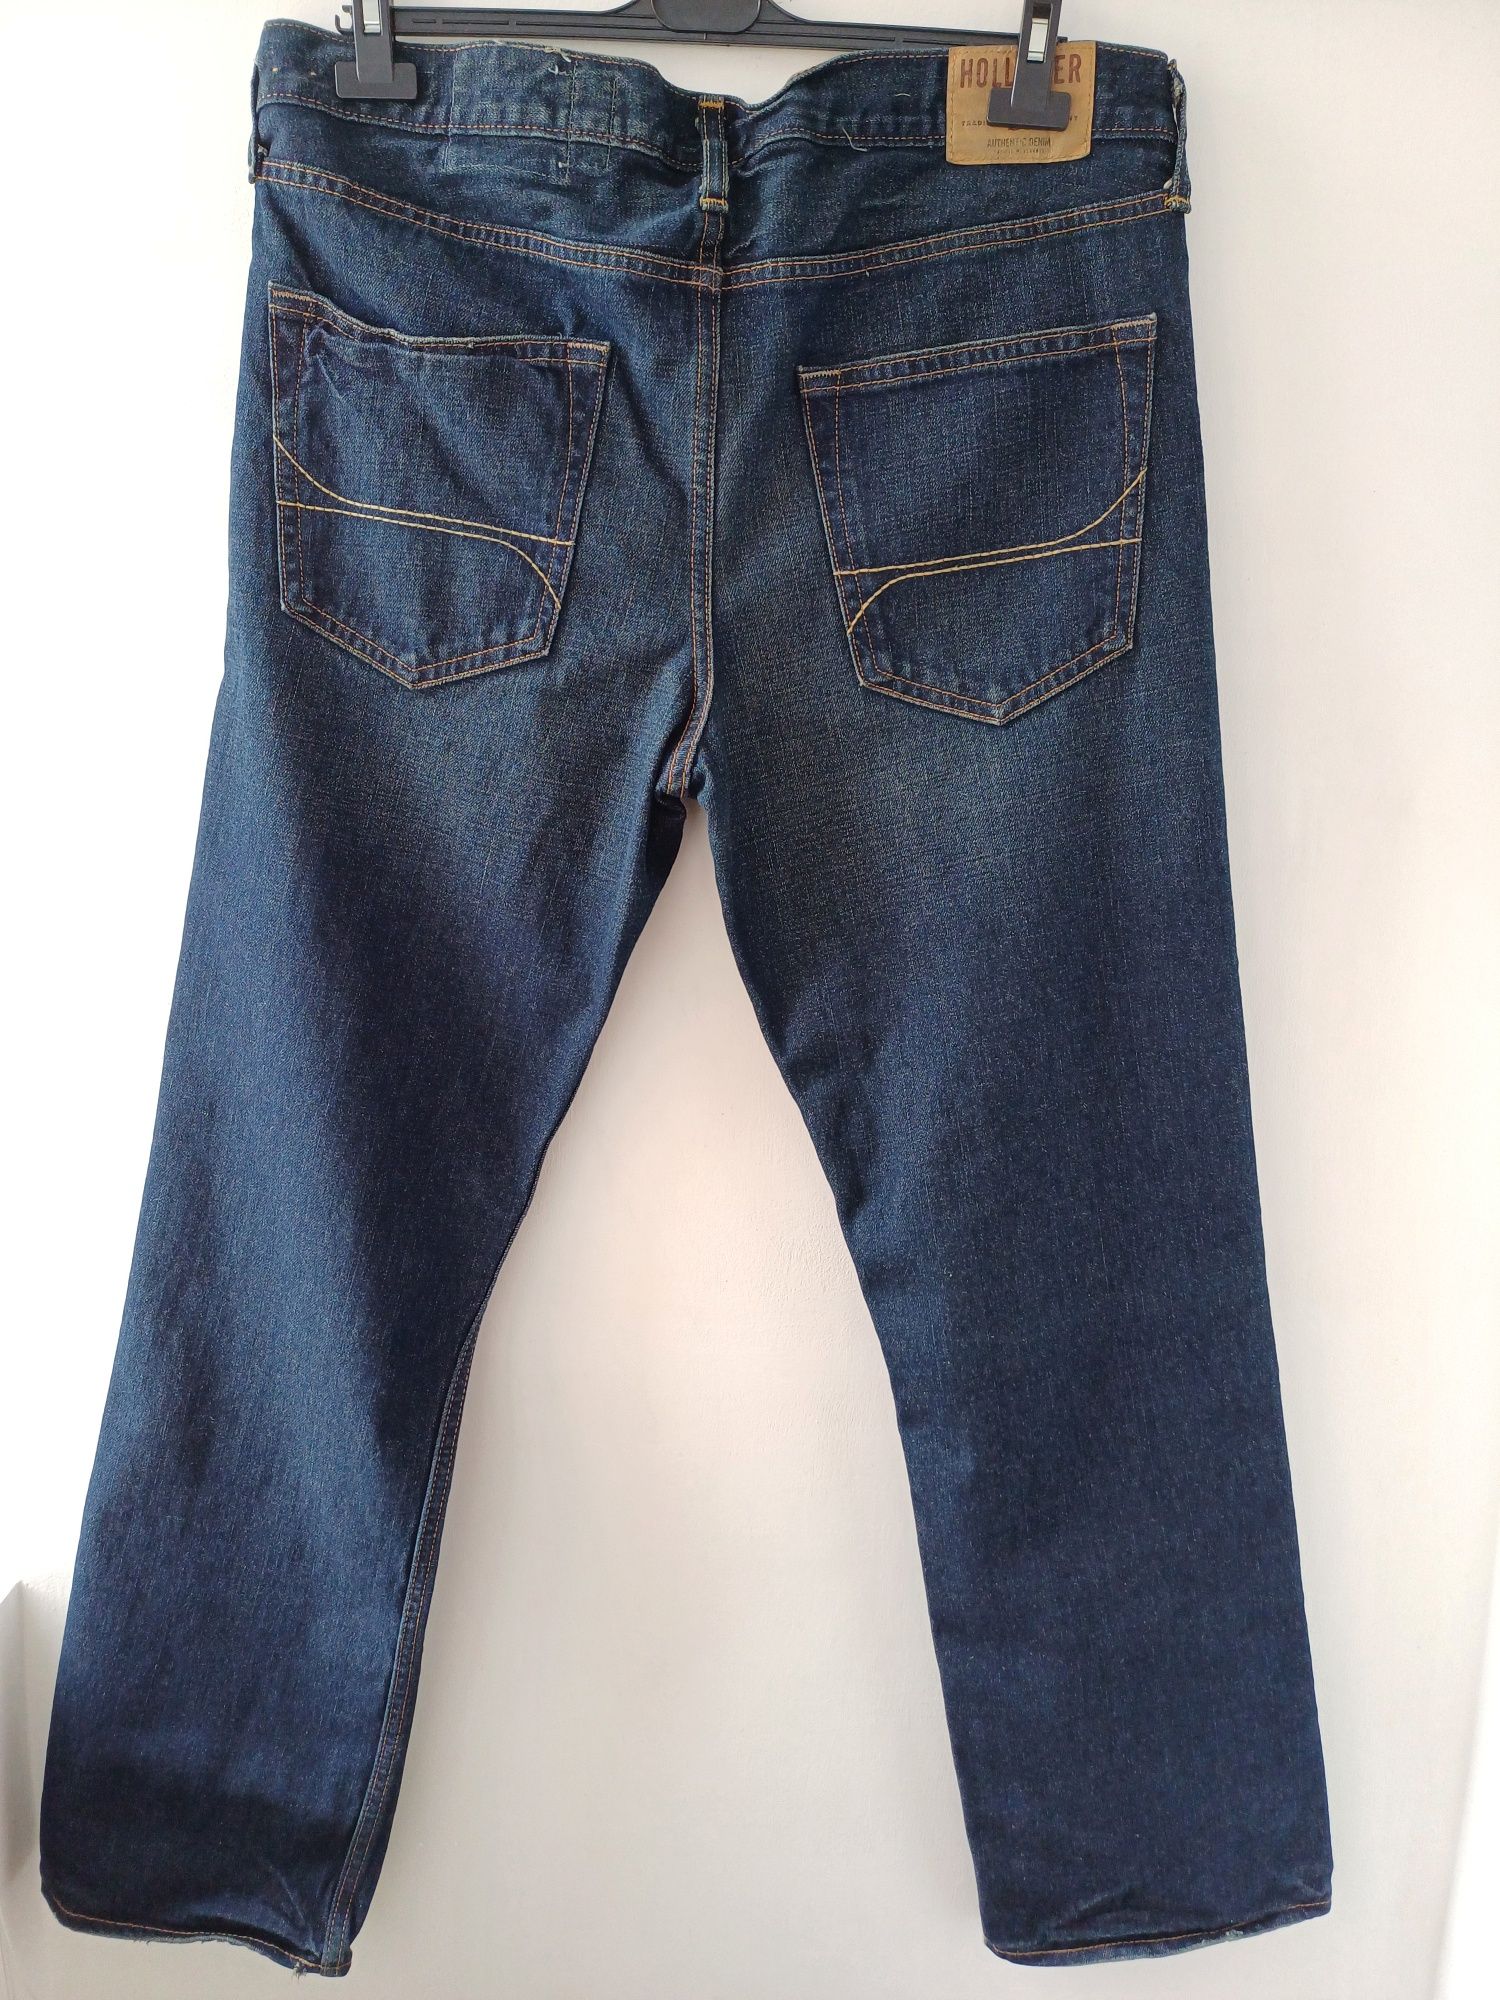 Качественные мужские джинсы HOLLISTER оригинал USA 36×32